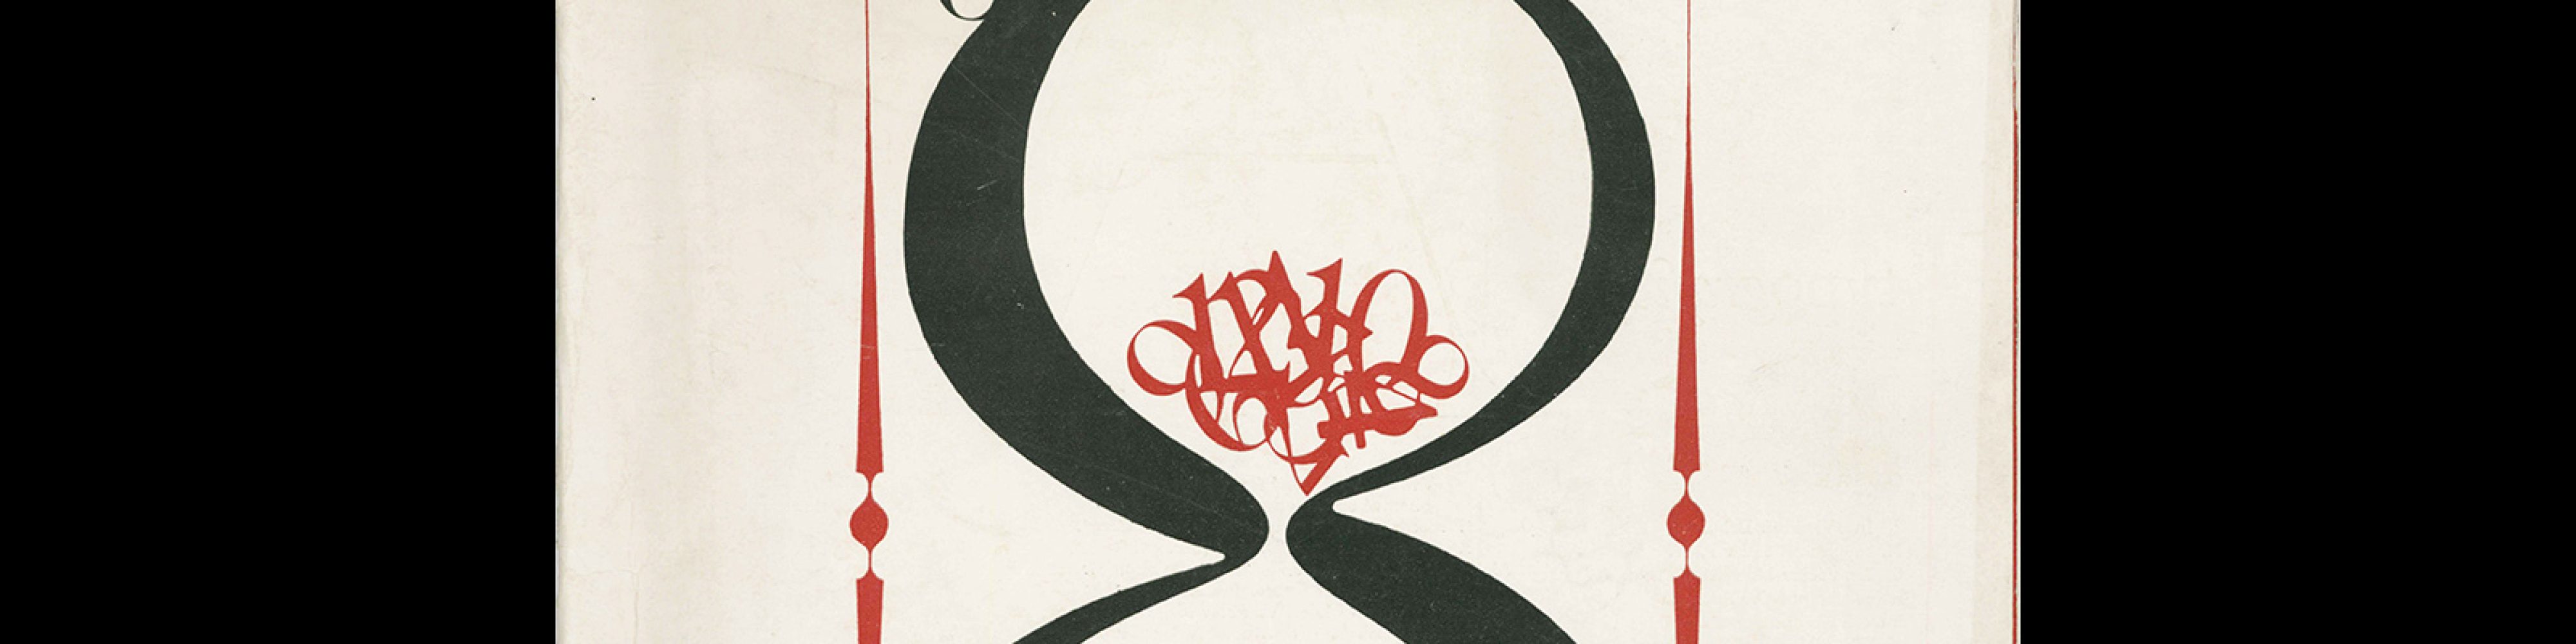 Typografia, ročník 71, 01, 1968. Cover design by Jiří Rathouský